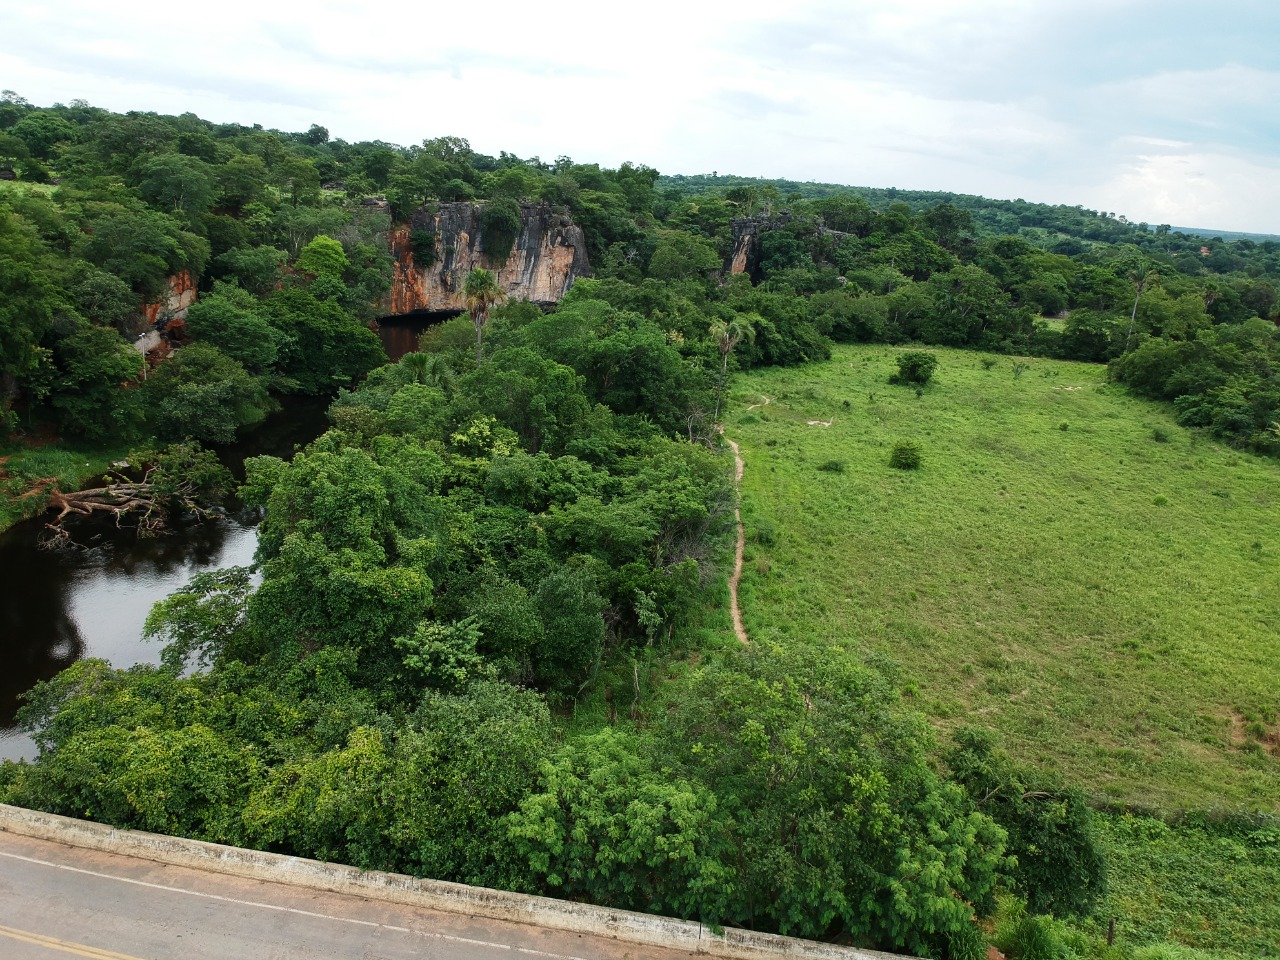 Sítio do Rio Grande visto pelas lentes de um drone